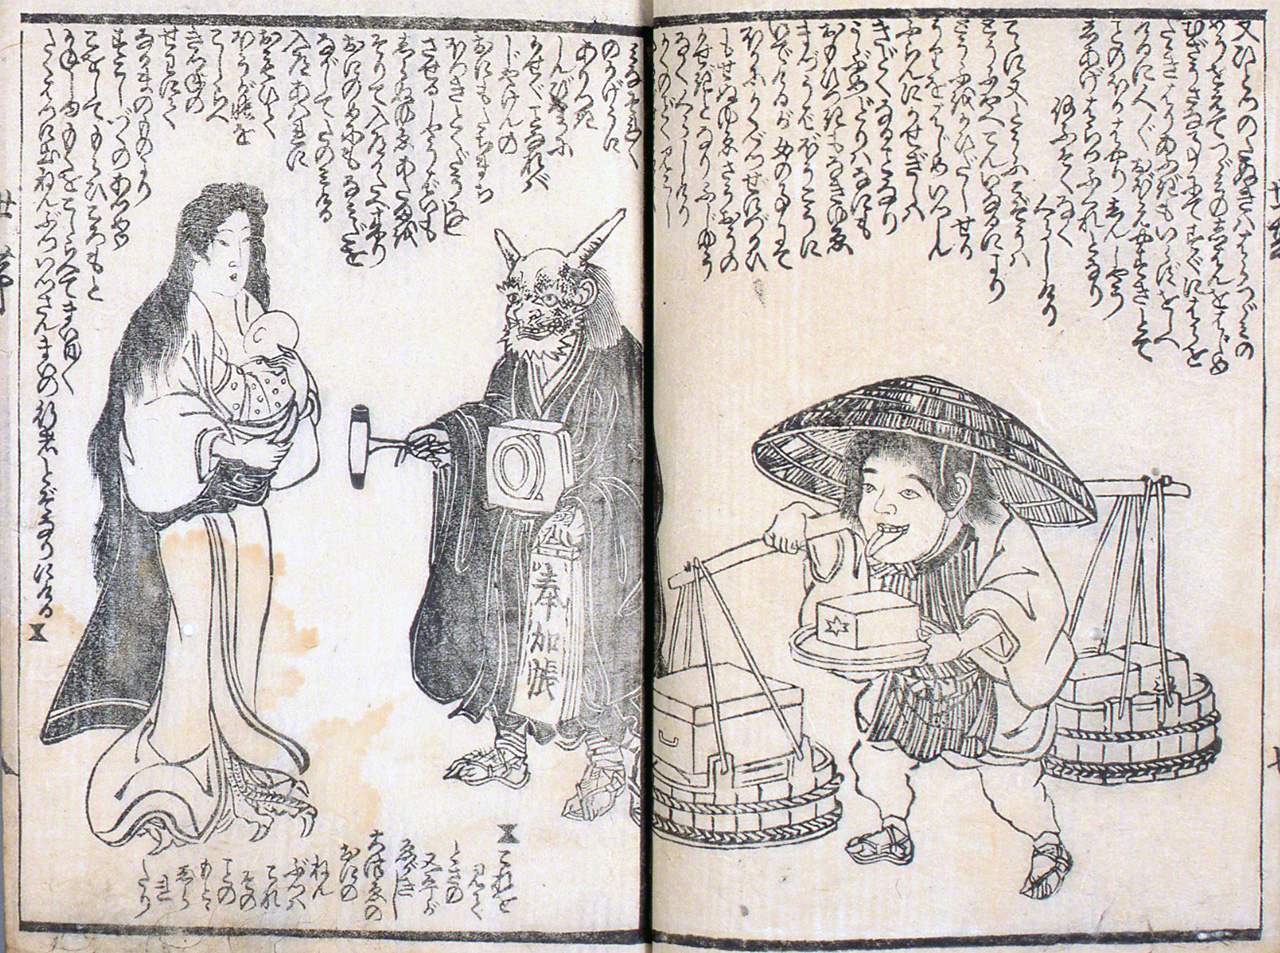 كوسازوشي . تم رسم مظهر الباكيمونو التي توقفت عن فعل الأشياء السيئة للبشر بأمر من رئيسها ميكوشينيودو، والتحقت بمهن لائقة (خزينة المؤلف)